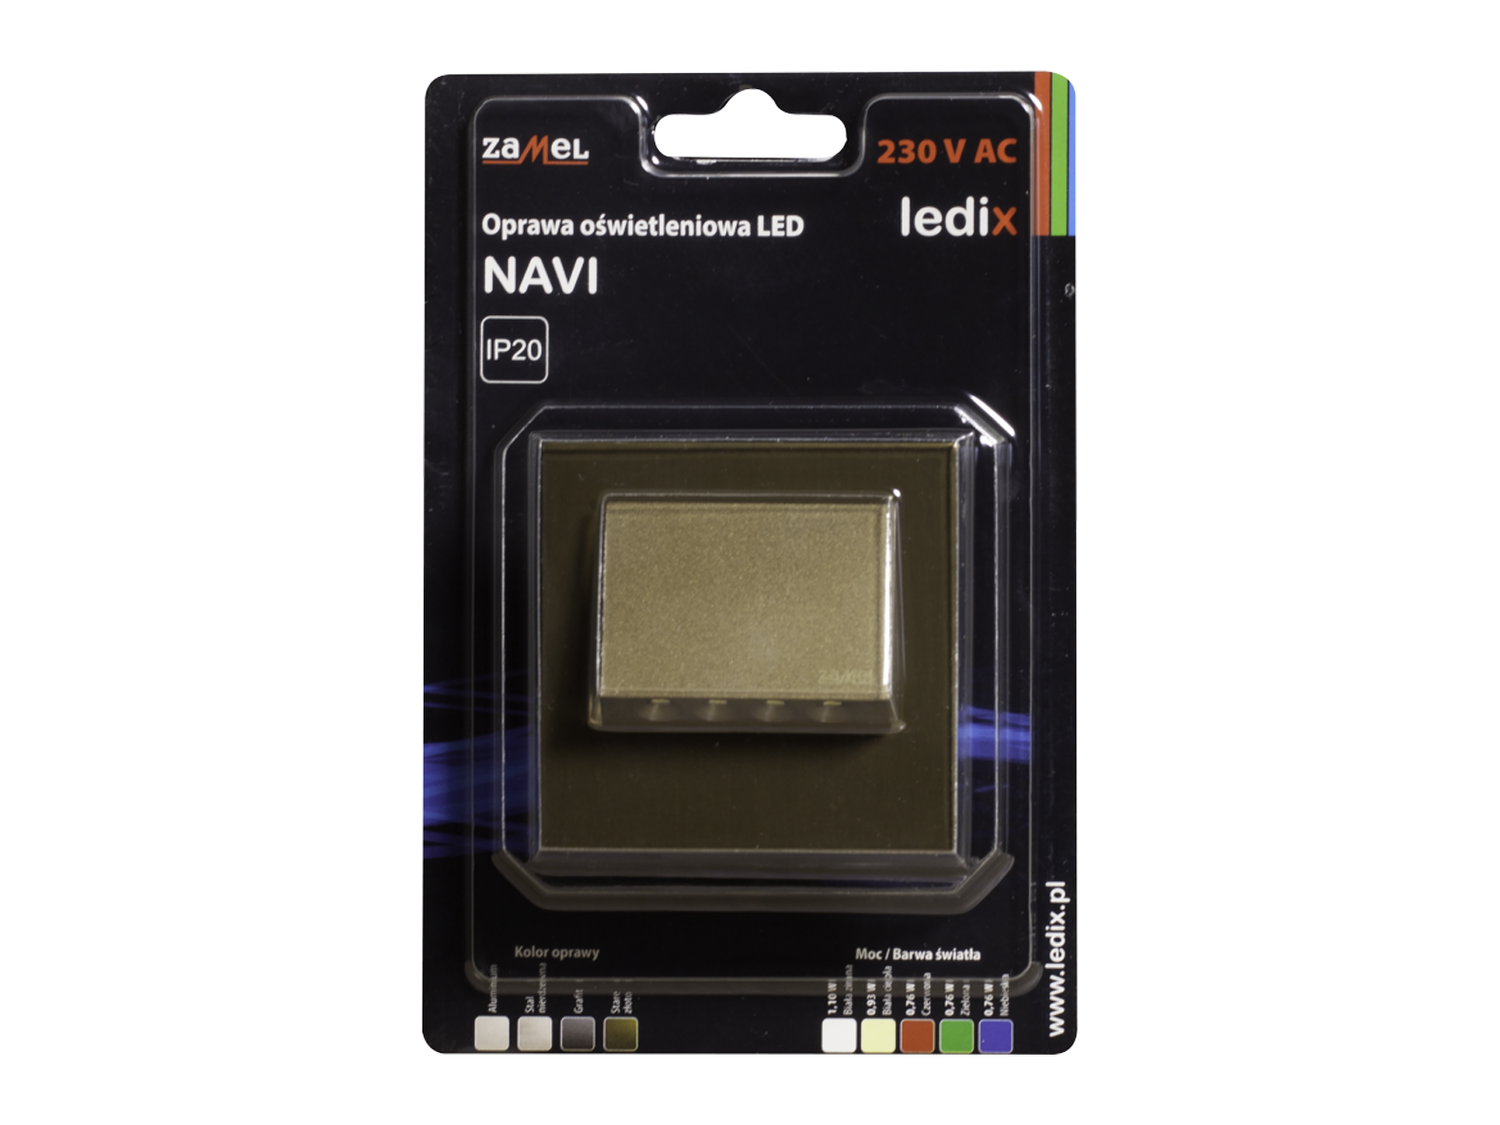 Svítidlo LED pod omítku LEDIX NAVI 230V AC, zlatá patina, teplá bílá, IP20